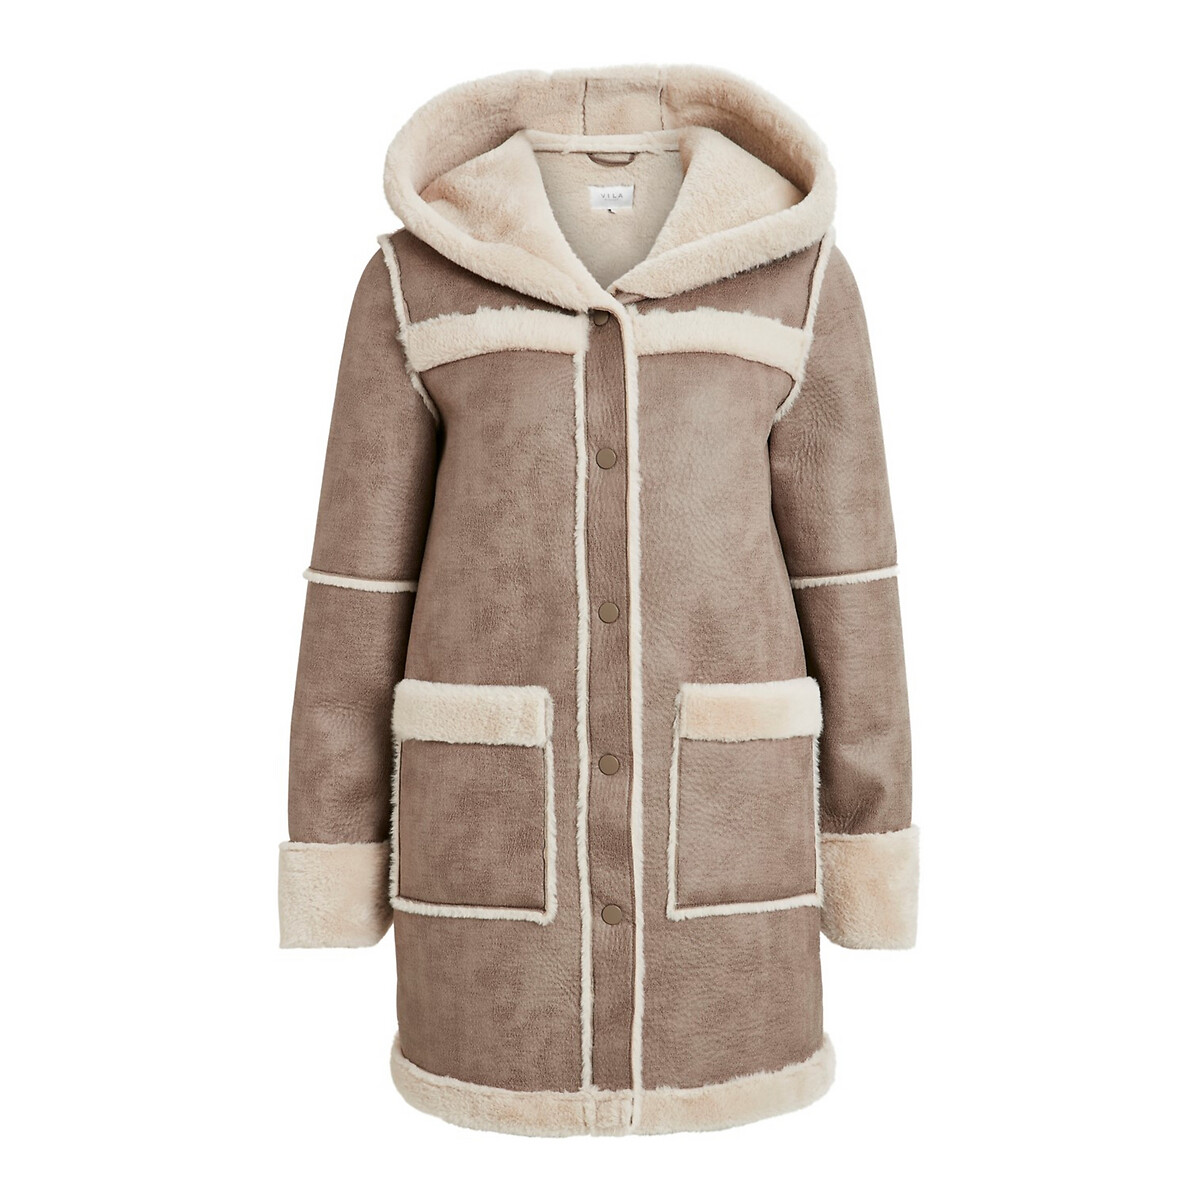 Пальто La Redoute С капюшоном под кожу мутон 38 (FR) - 44 (RUS) каштановый, размер 38 (FR) - 44 (RUS) С капюшоном под кожу мутон 38 (FR) - 44 (RUS) каштановый - фото 1